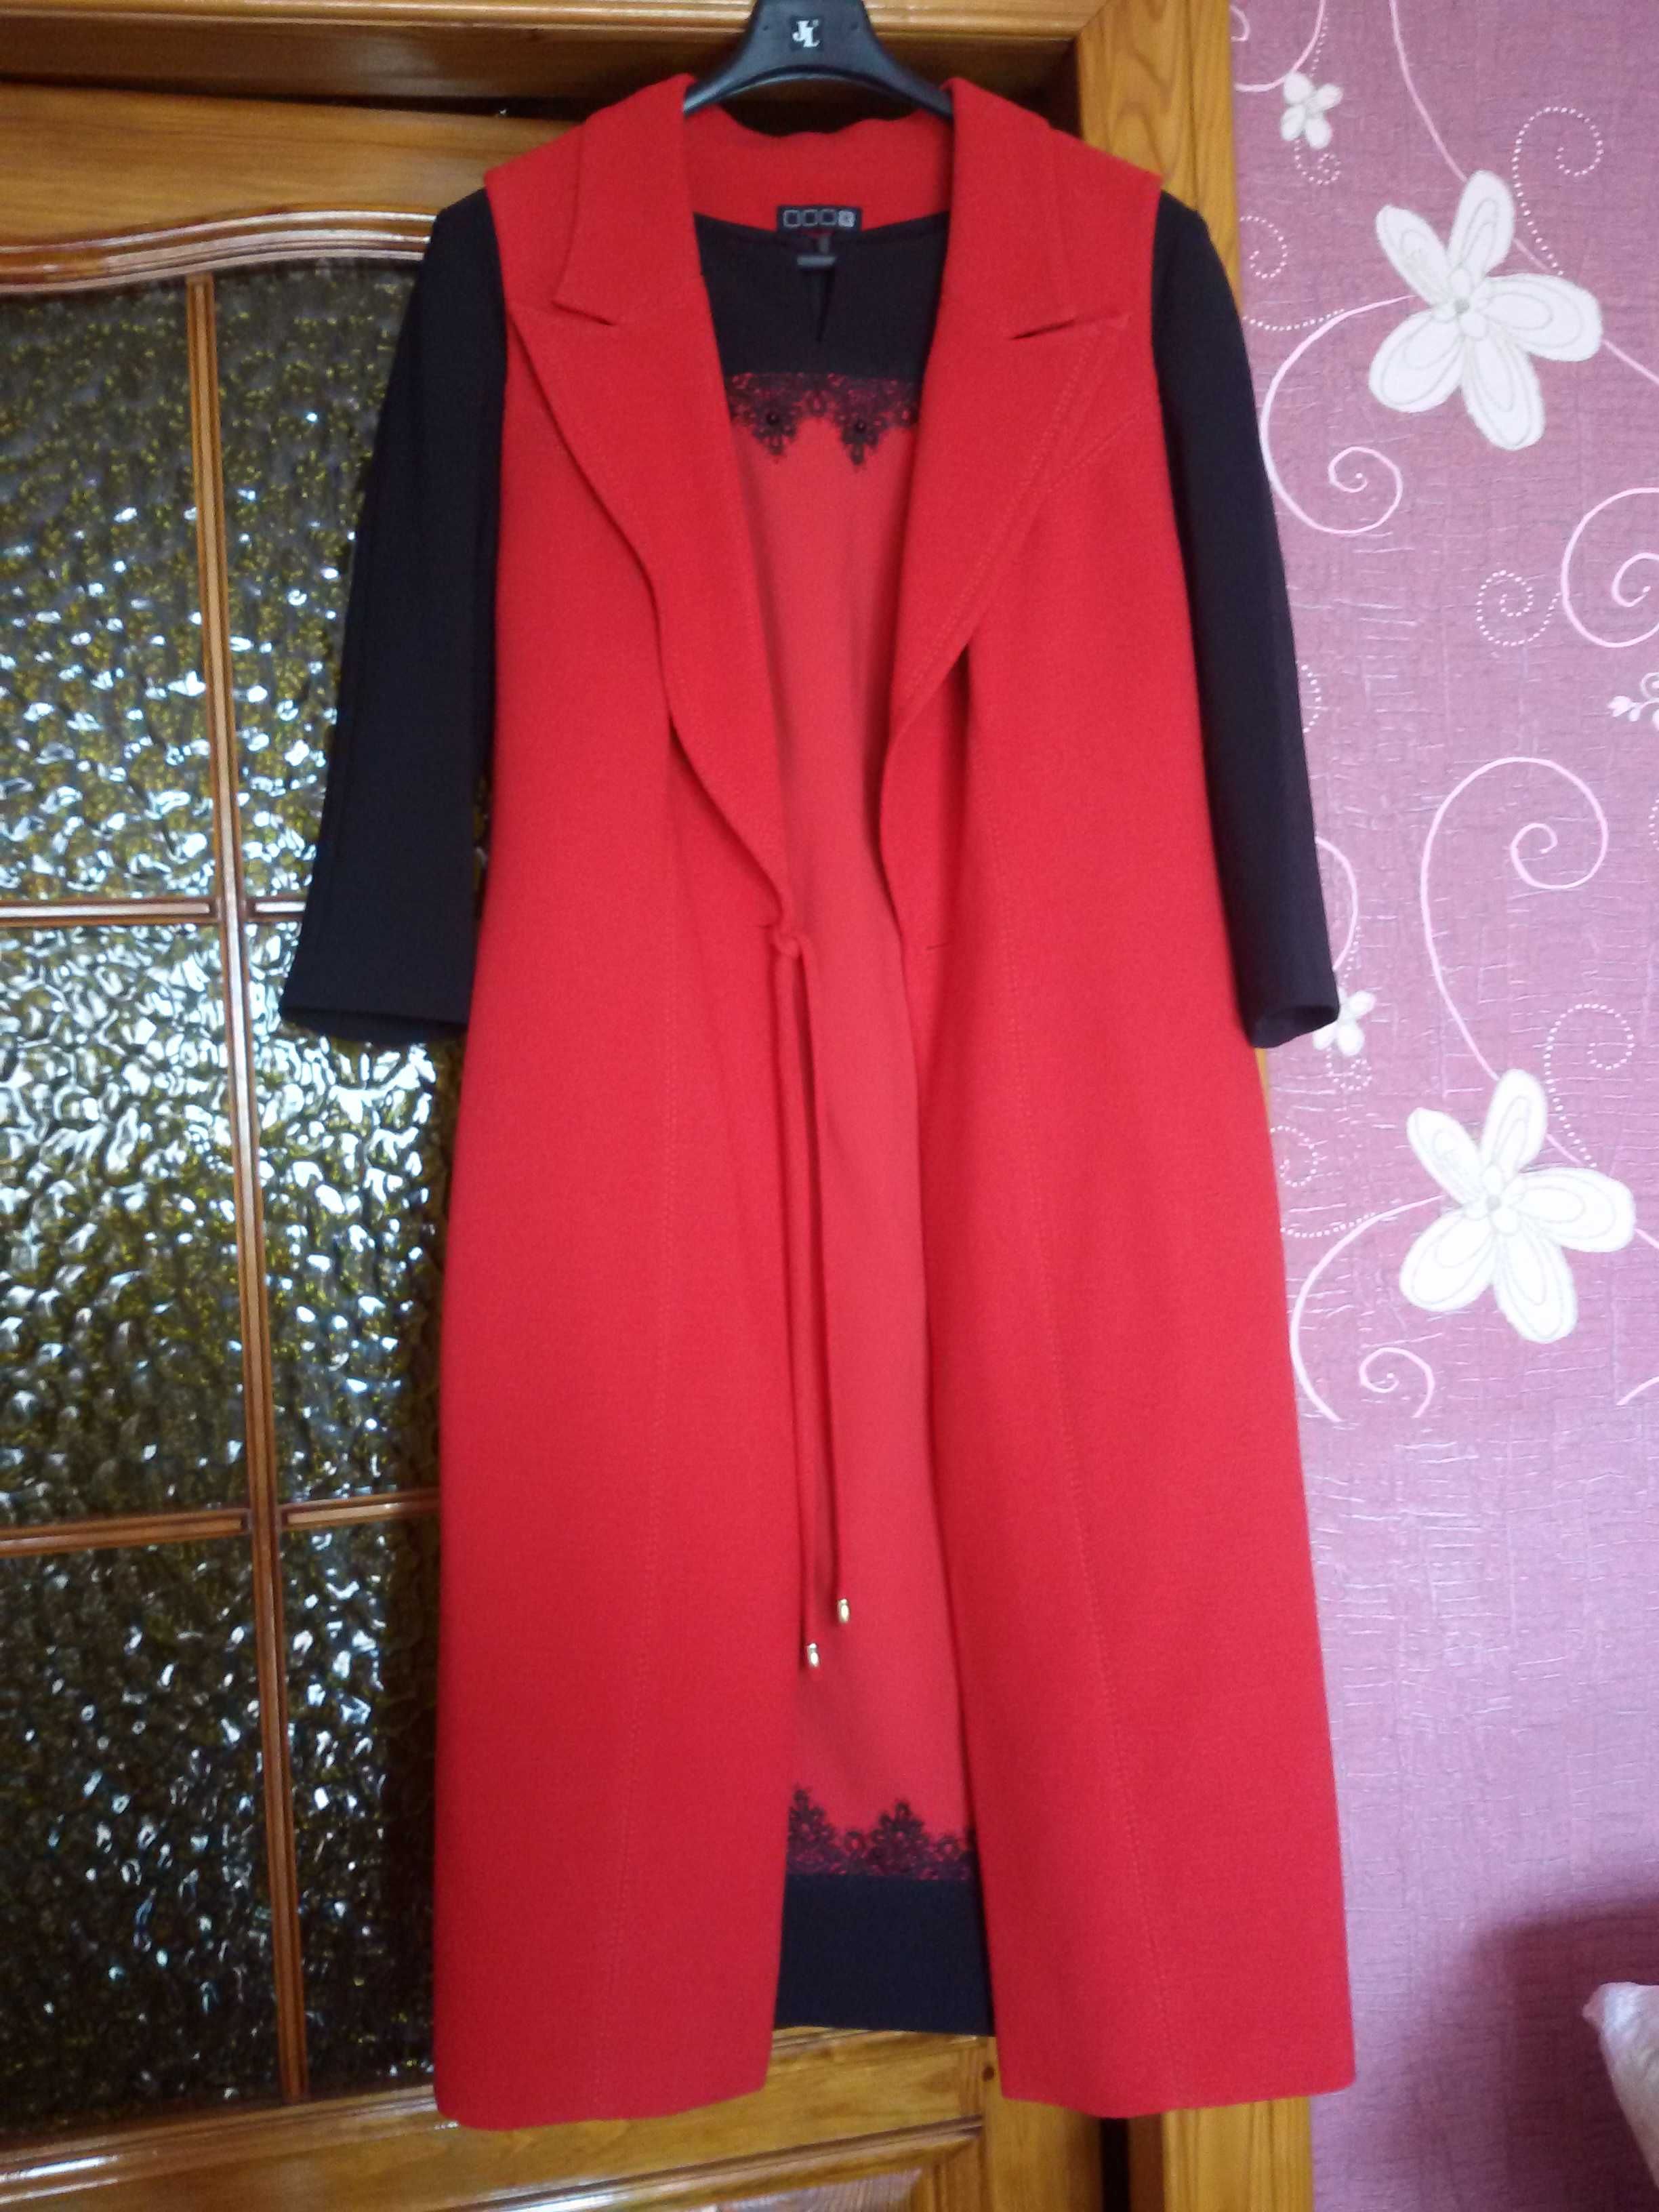 Стильное женское платье-красного цвета, торговой марки "Д/ Э".J&L.р 54